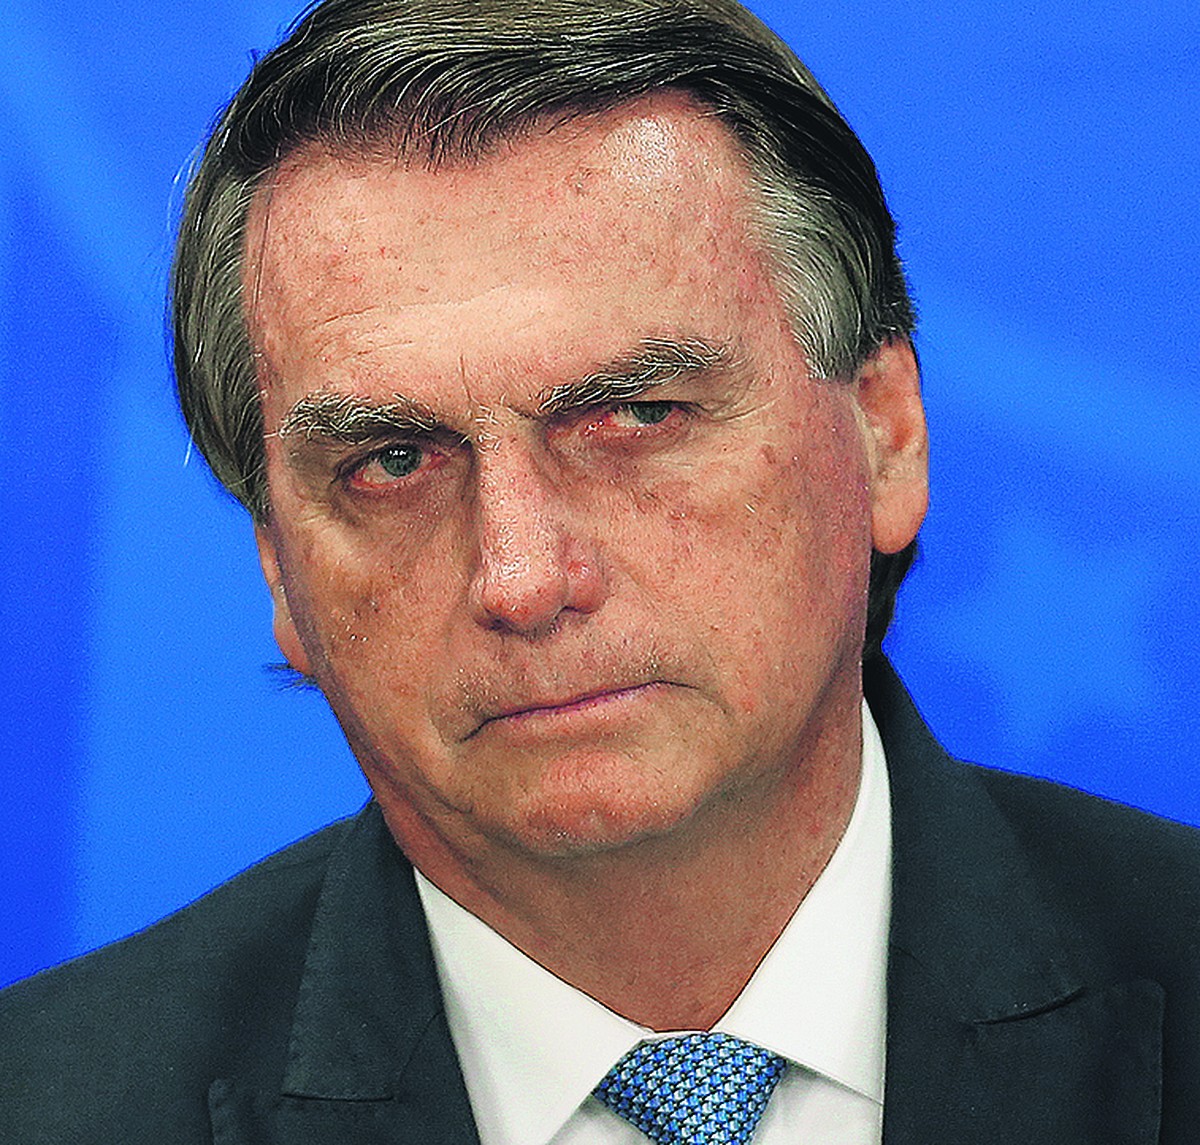 Flávio confirma participação de Jair Bolsonaro no Jornal Nacional | Política